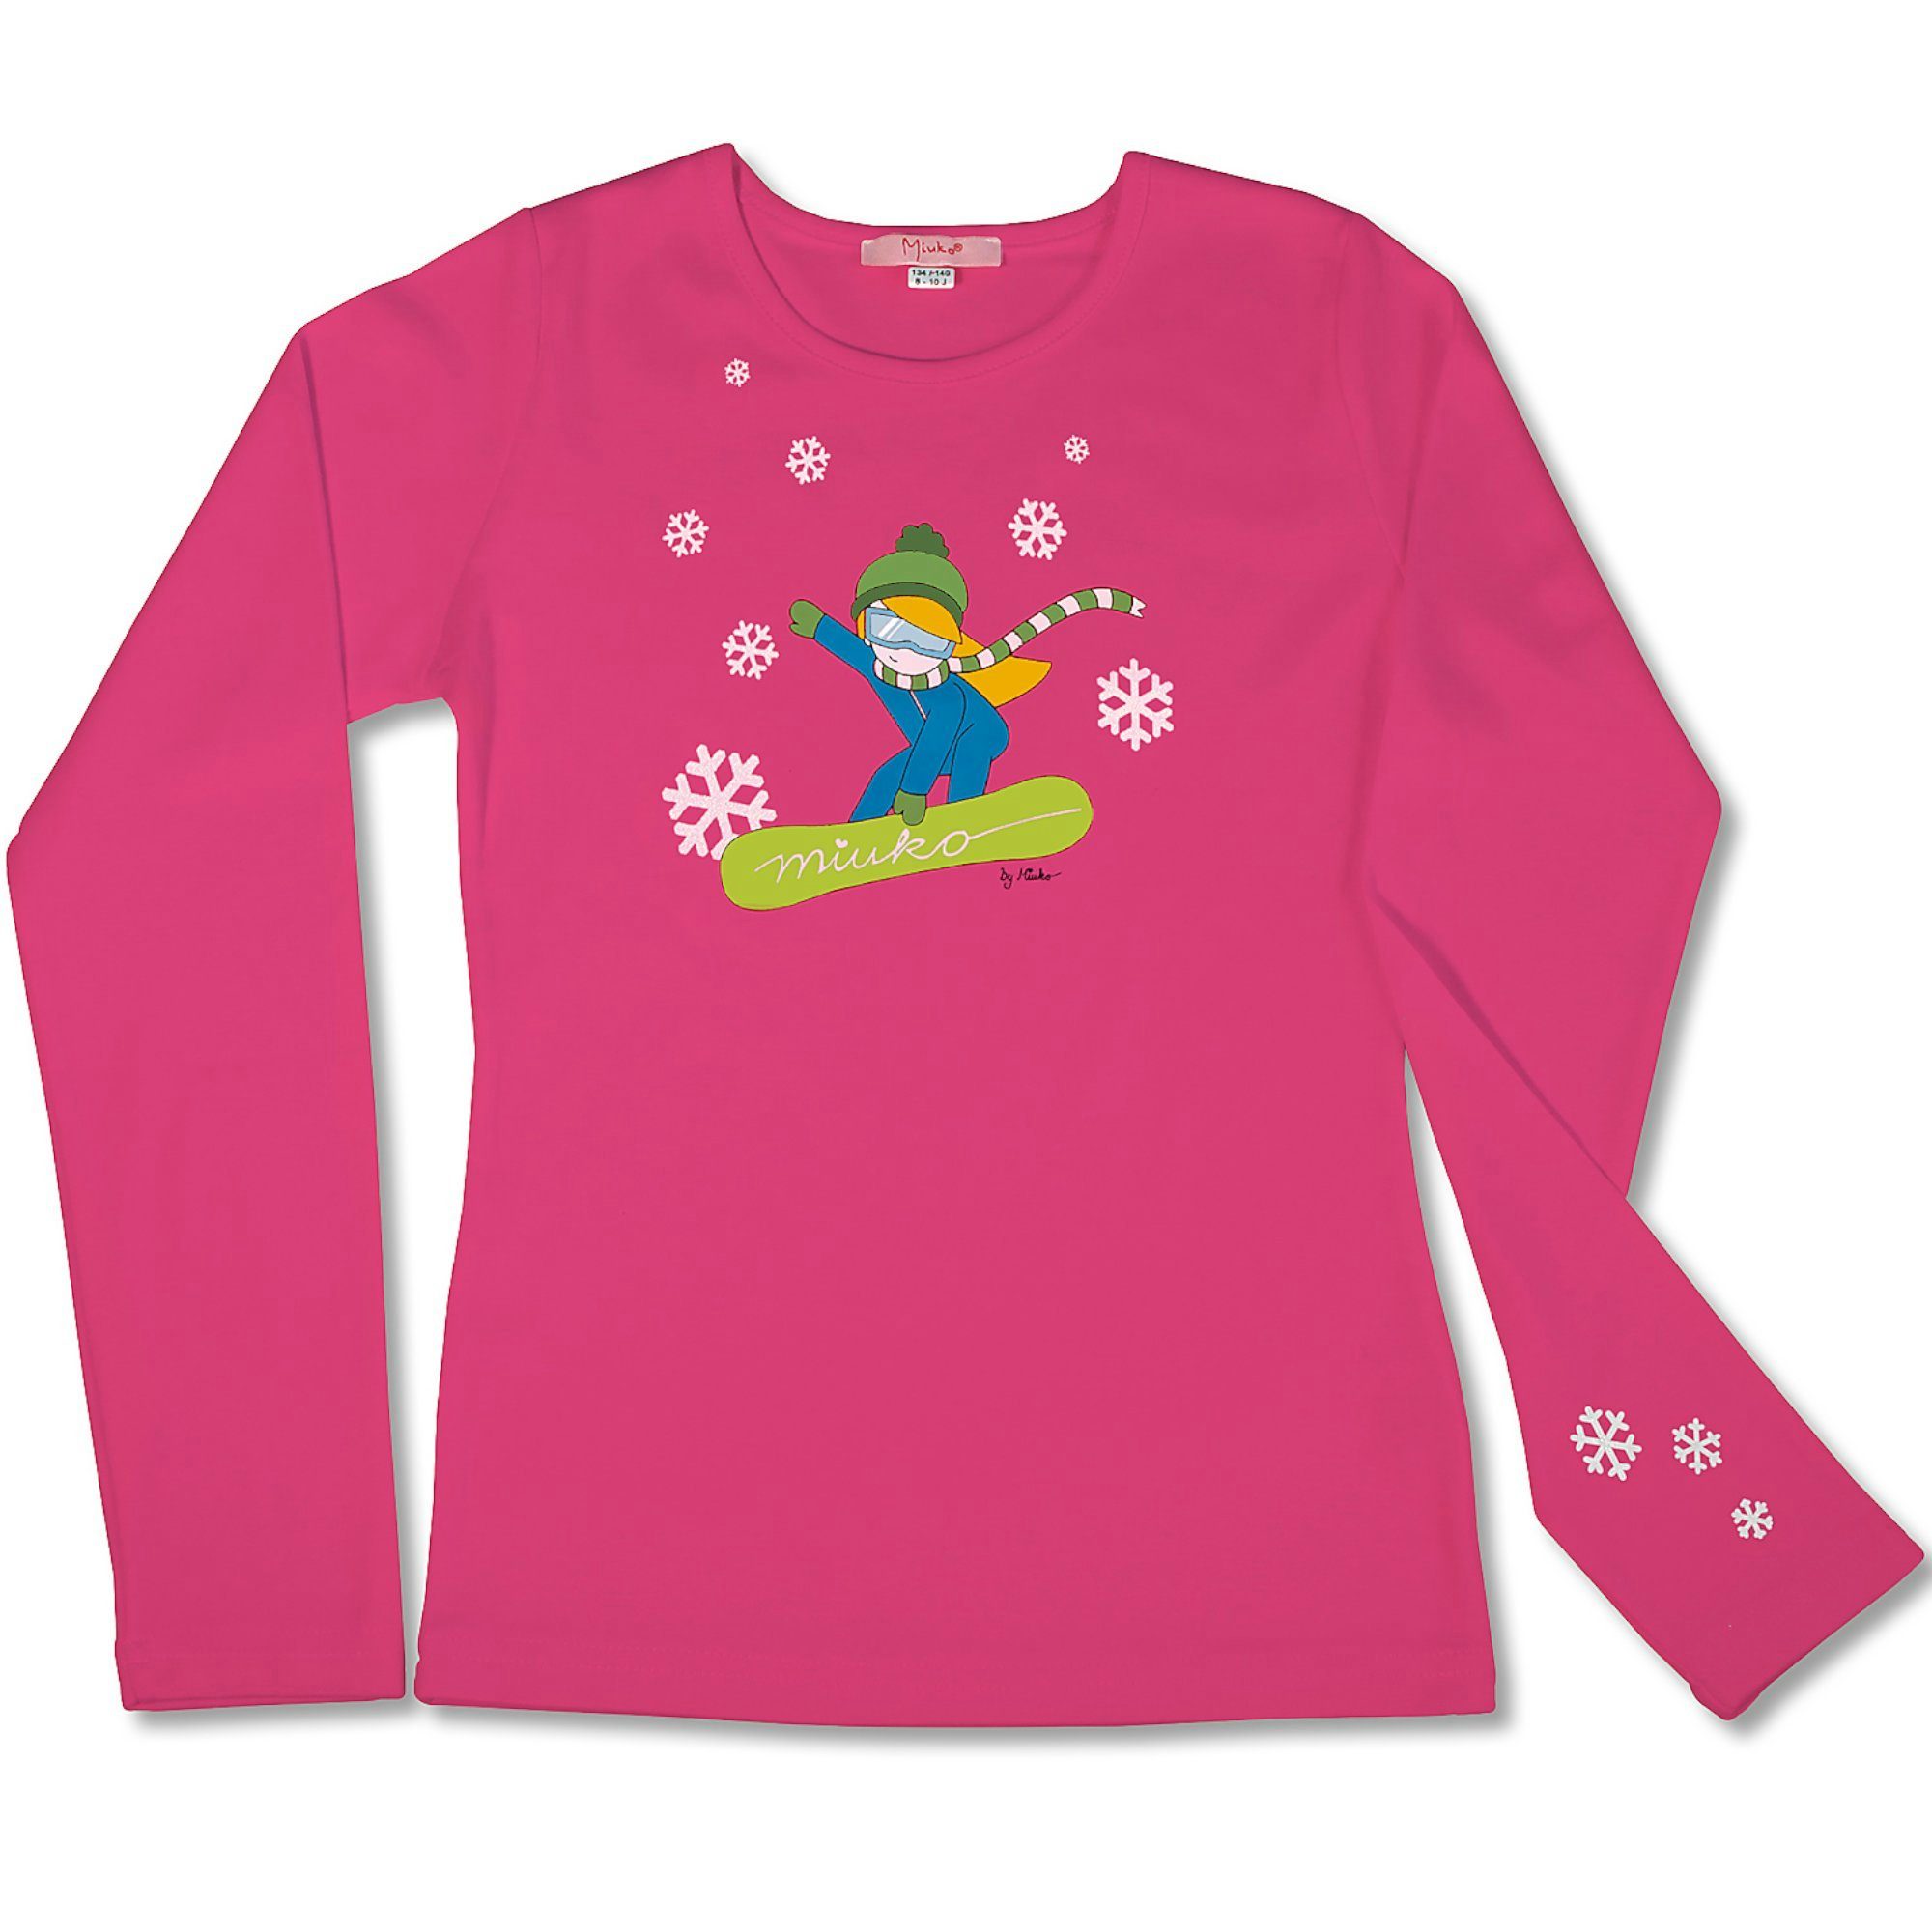 Miuko Langarmshirt für langärmlig, Mädchen pink, 100% Snowboarderin 158 122 134 164 128 weiß 140 Baumwolle 146 oder 152 rosa Motiv T-Shirt